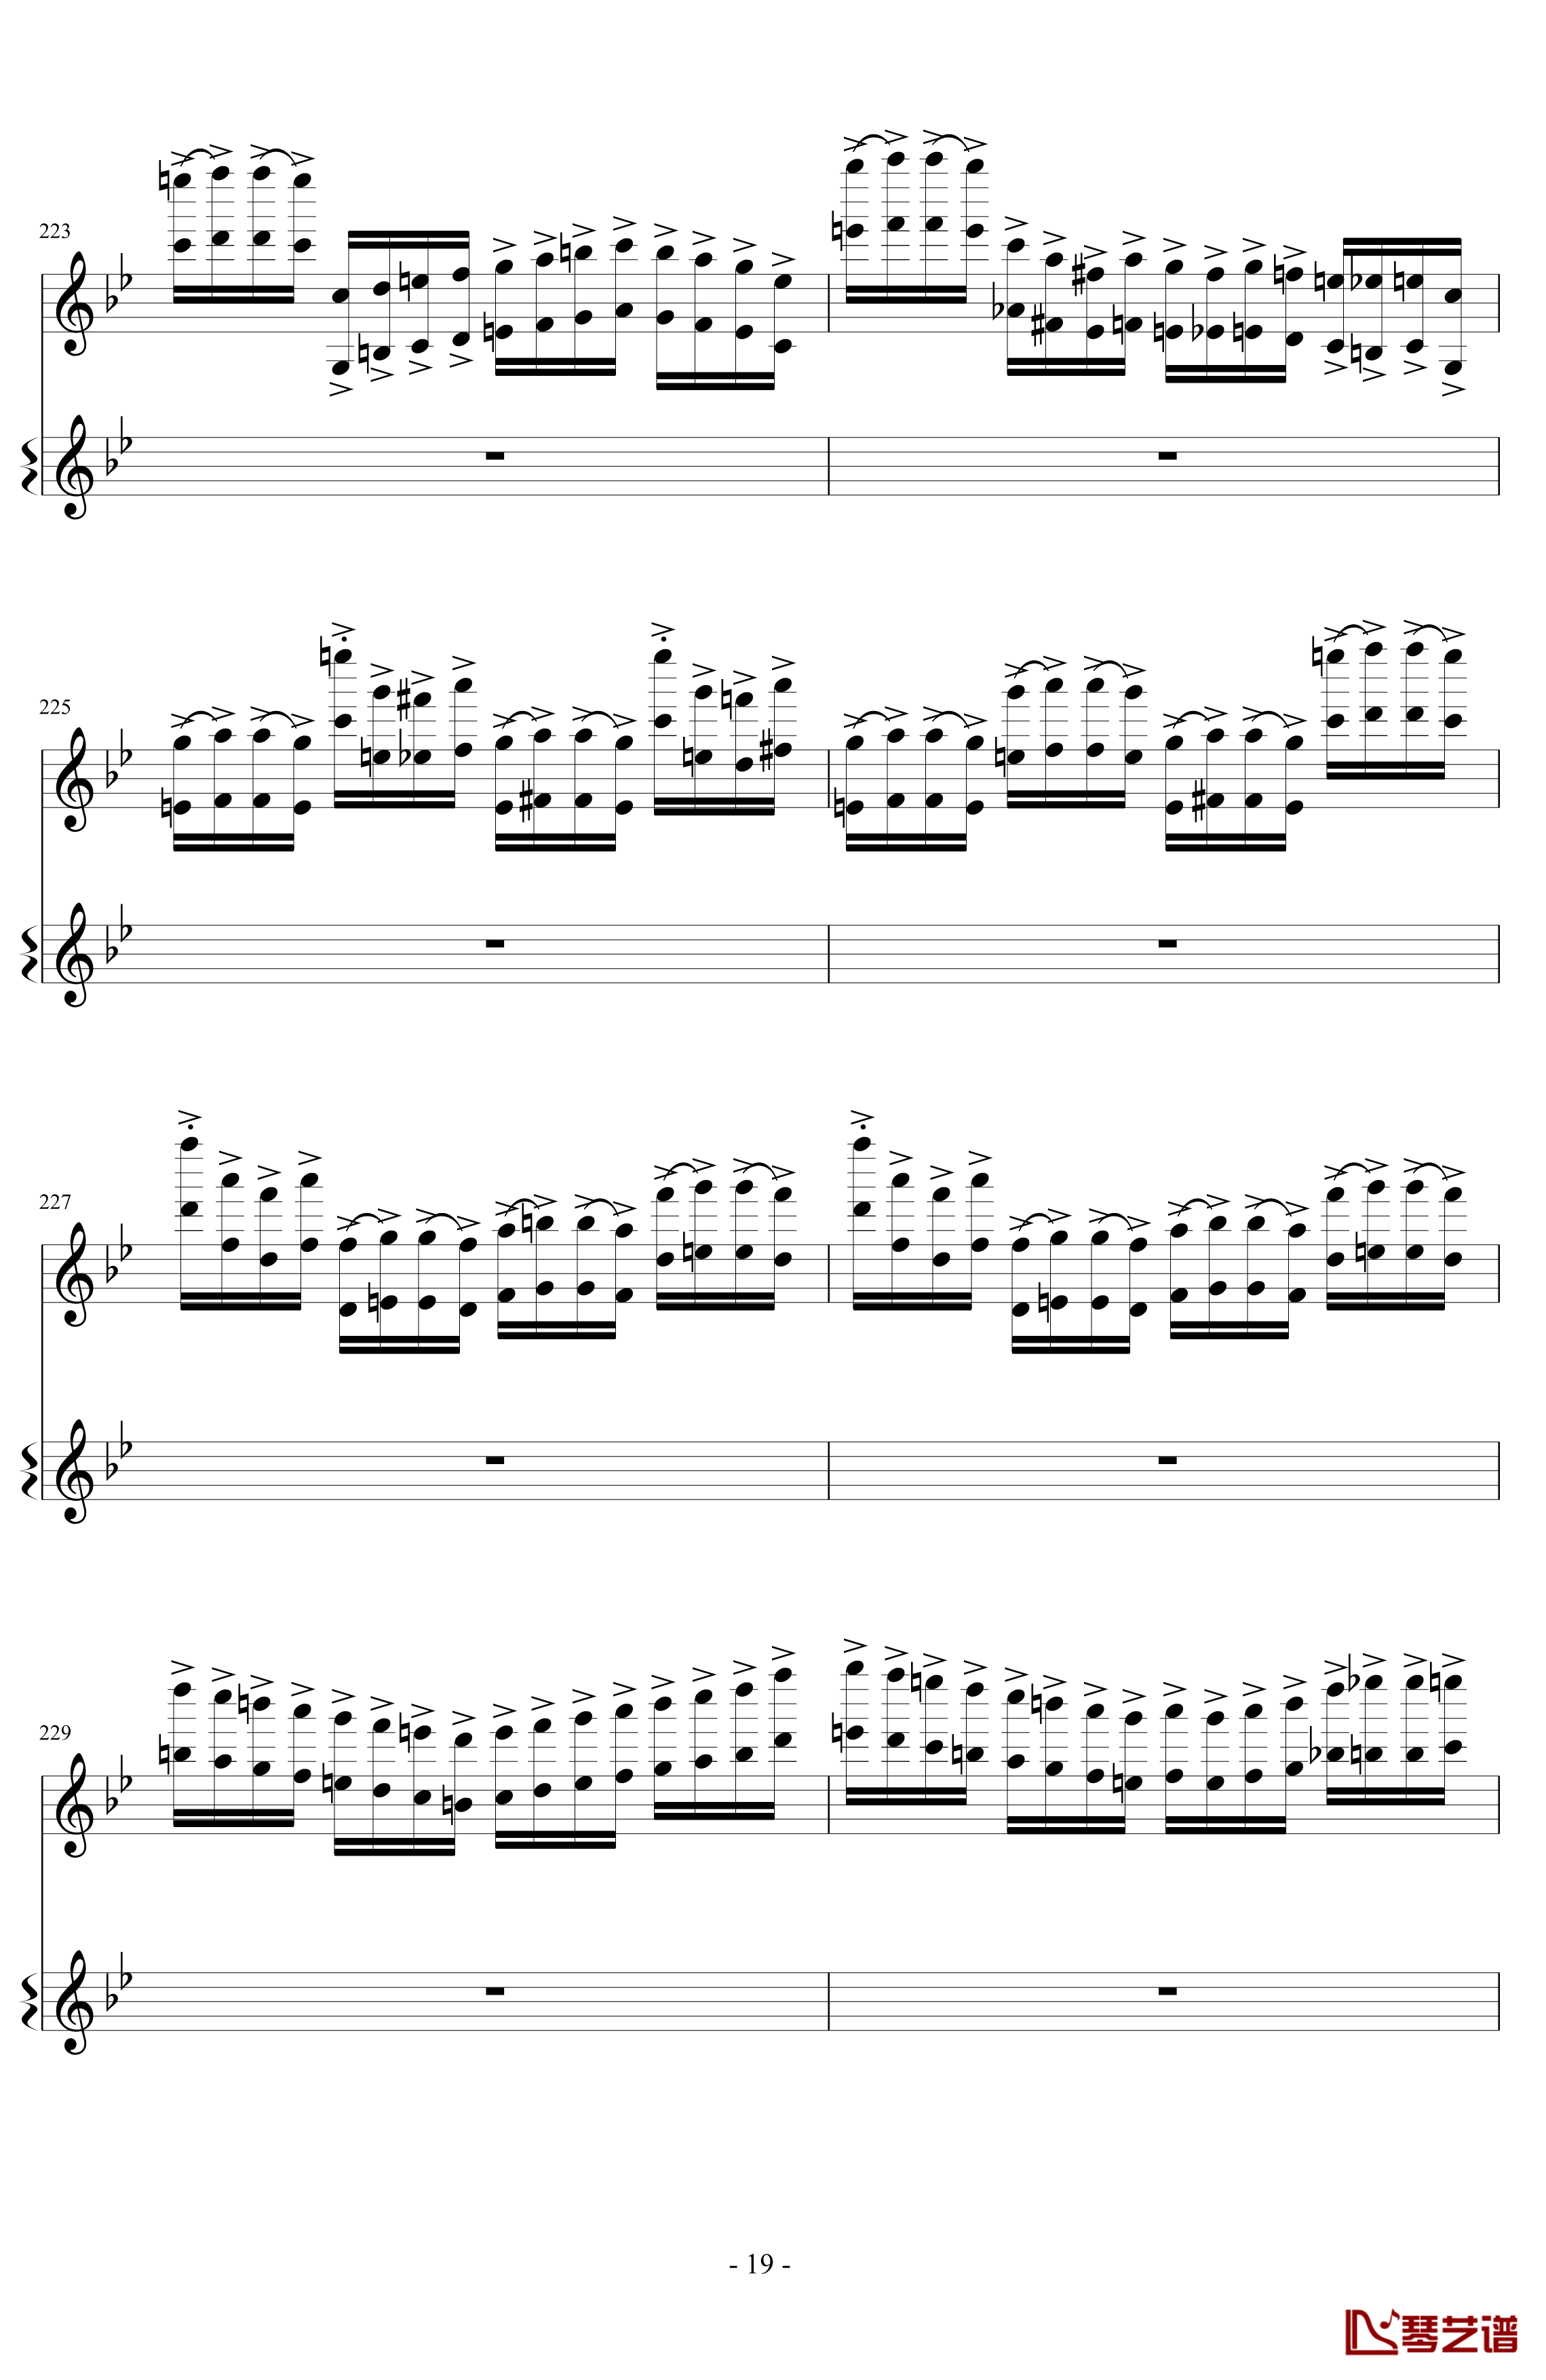 意大利国歌变奏曲钢琴谱-DXF19